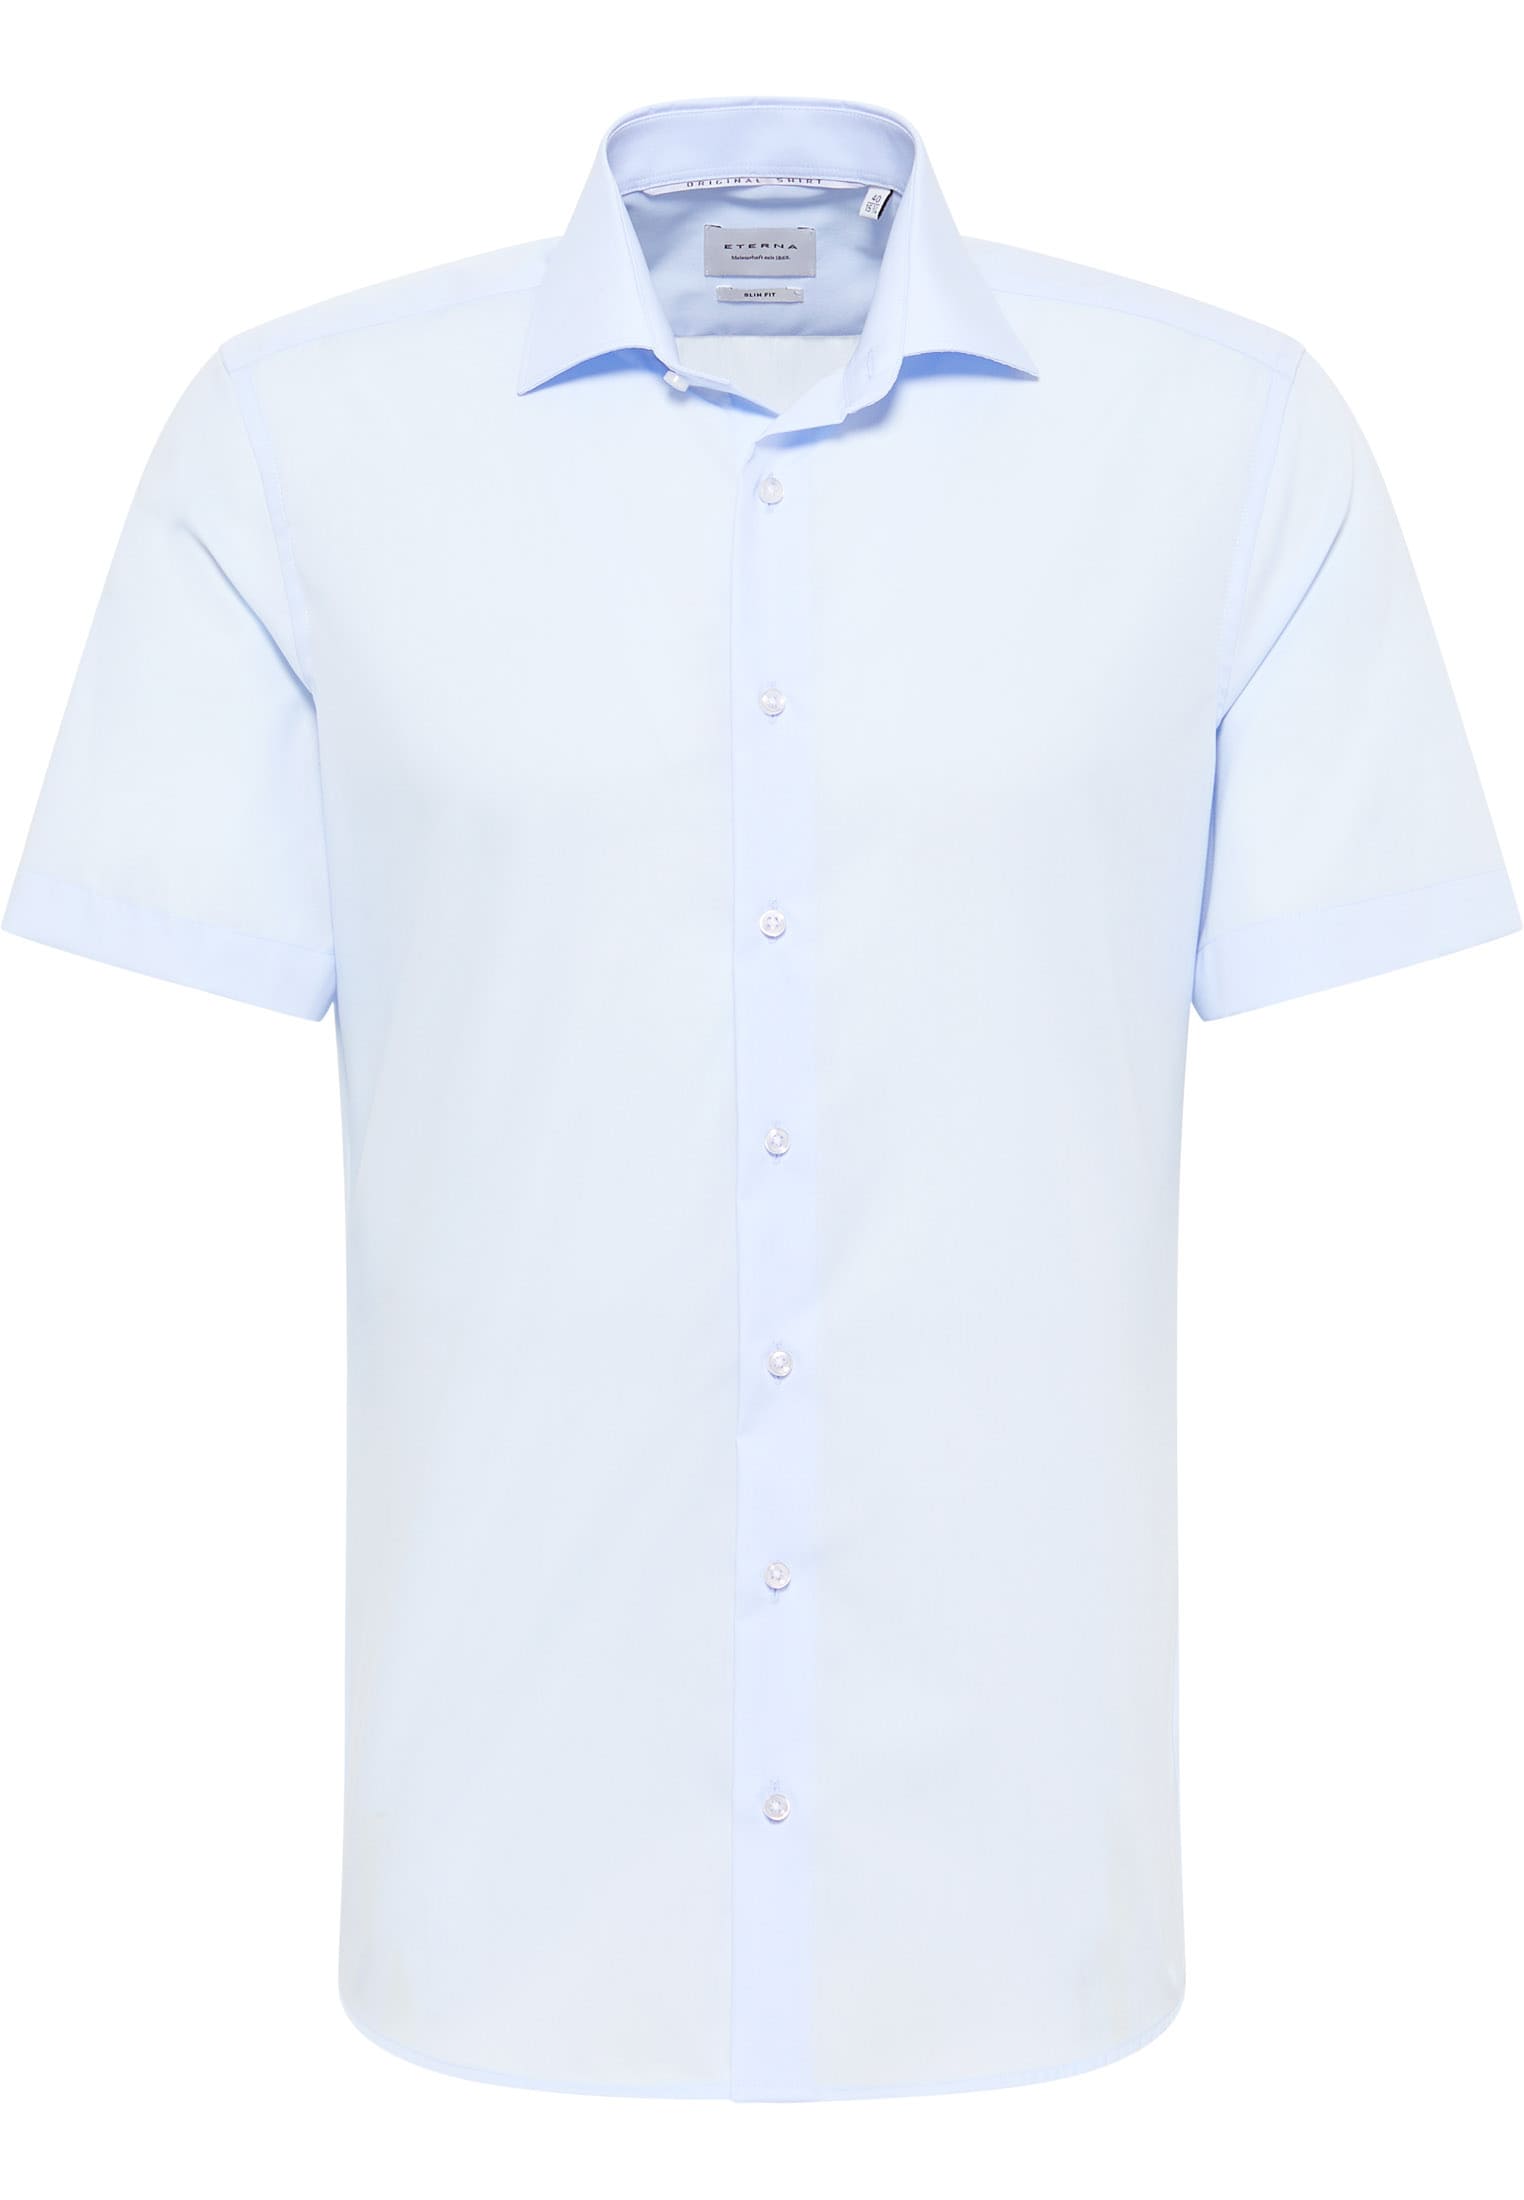 SLIM FIT Original Shirt in hellblau unifarben